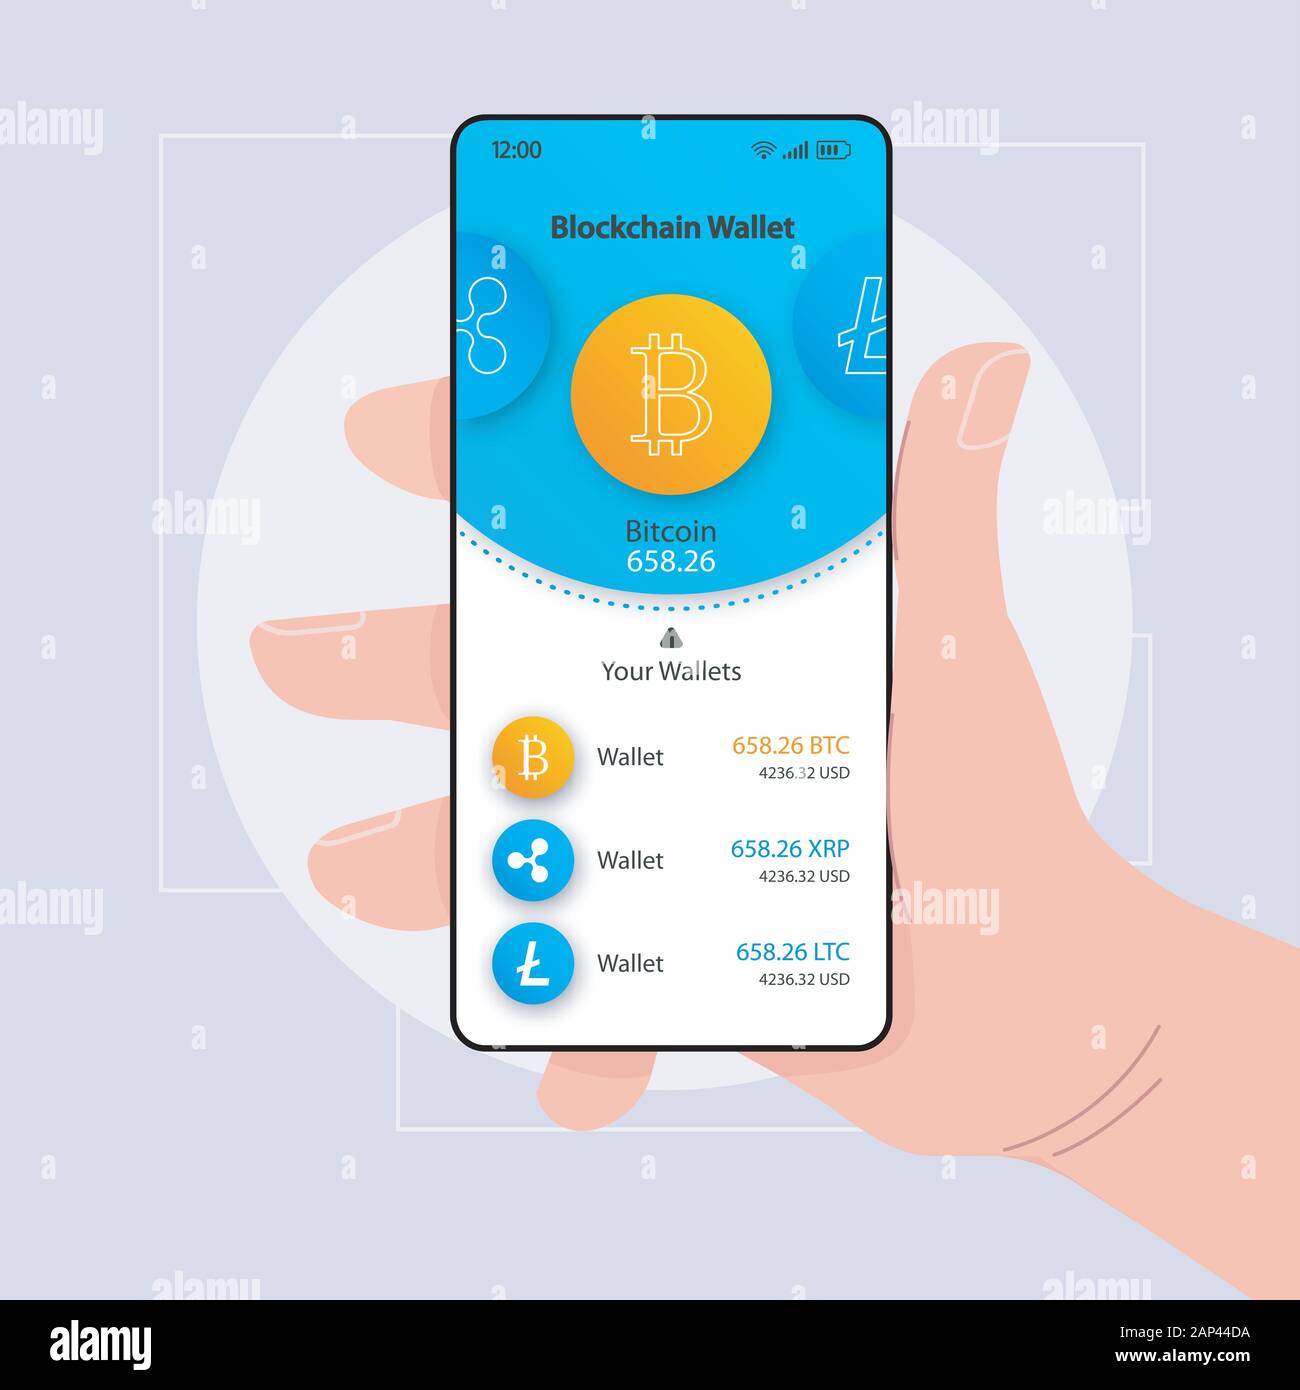 Blockchain Geldbeutel organizer smartphone Schnittstelle vektor Vorlage.  Mobile App Seite blau und weißen Design Layout. BTC Betrag angezeigt.  Flachbild-UI für Anwendungen Stock-Vektorgrafik - Alamy